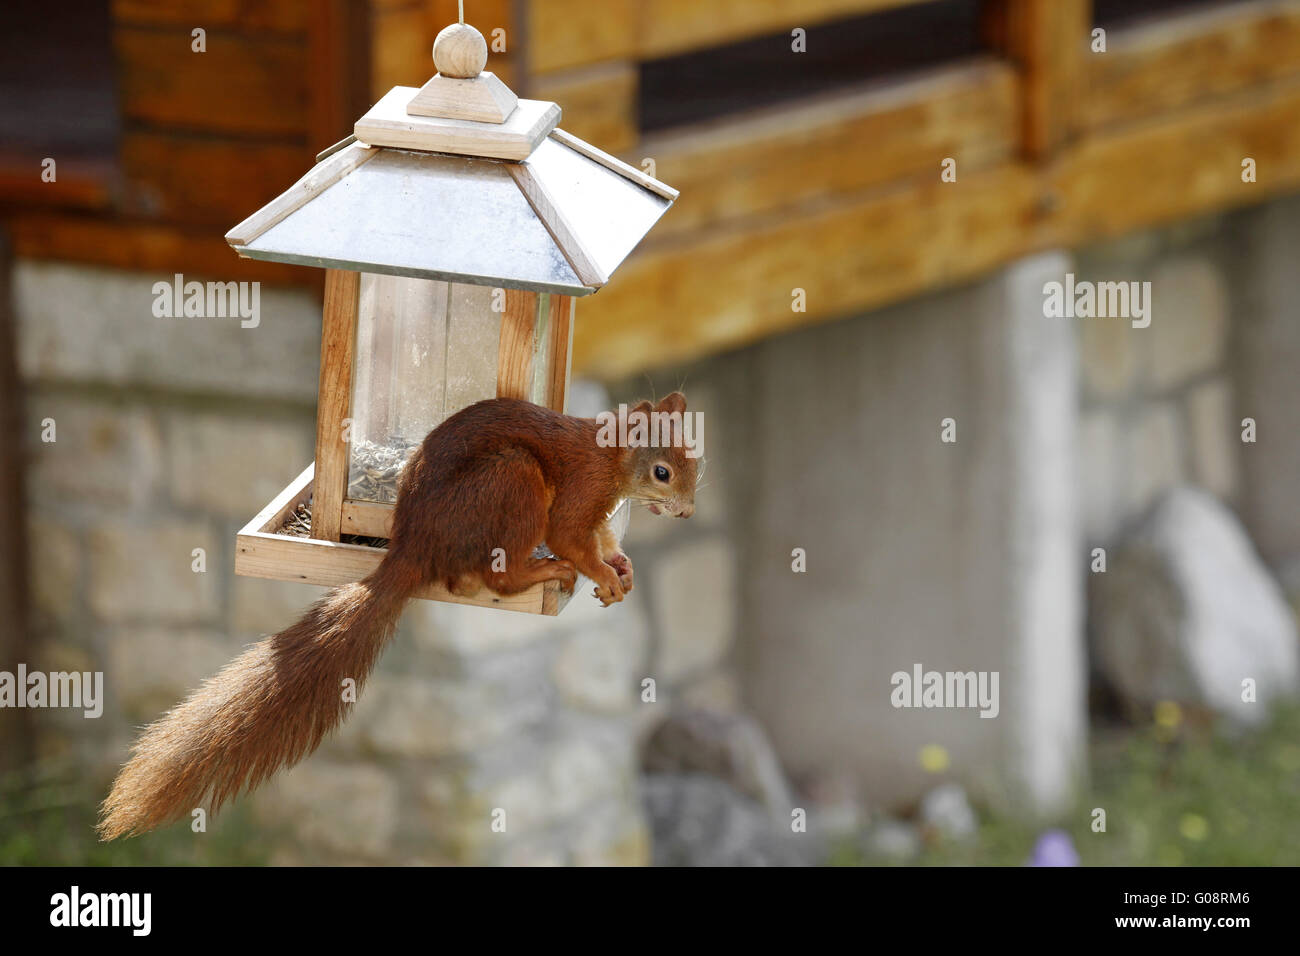 Red squirrel / Sciurus vulgaris on bird feeder Stock Photo